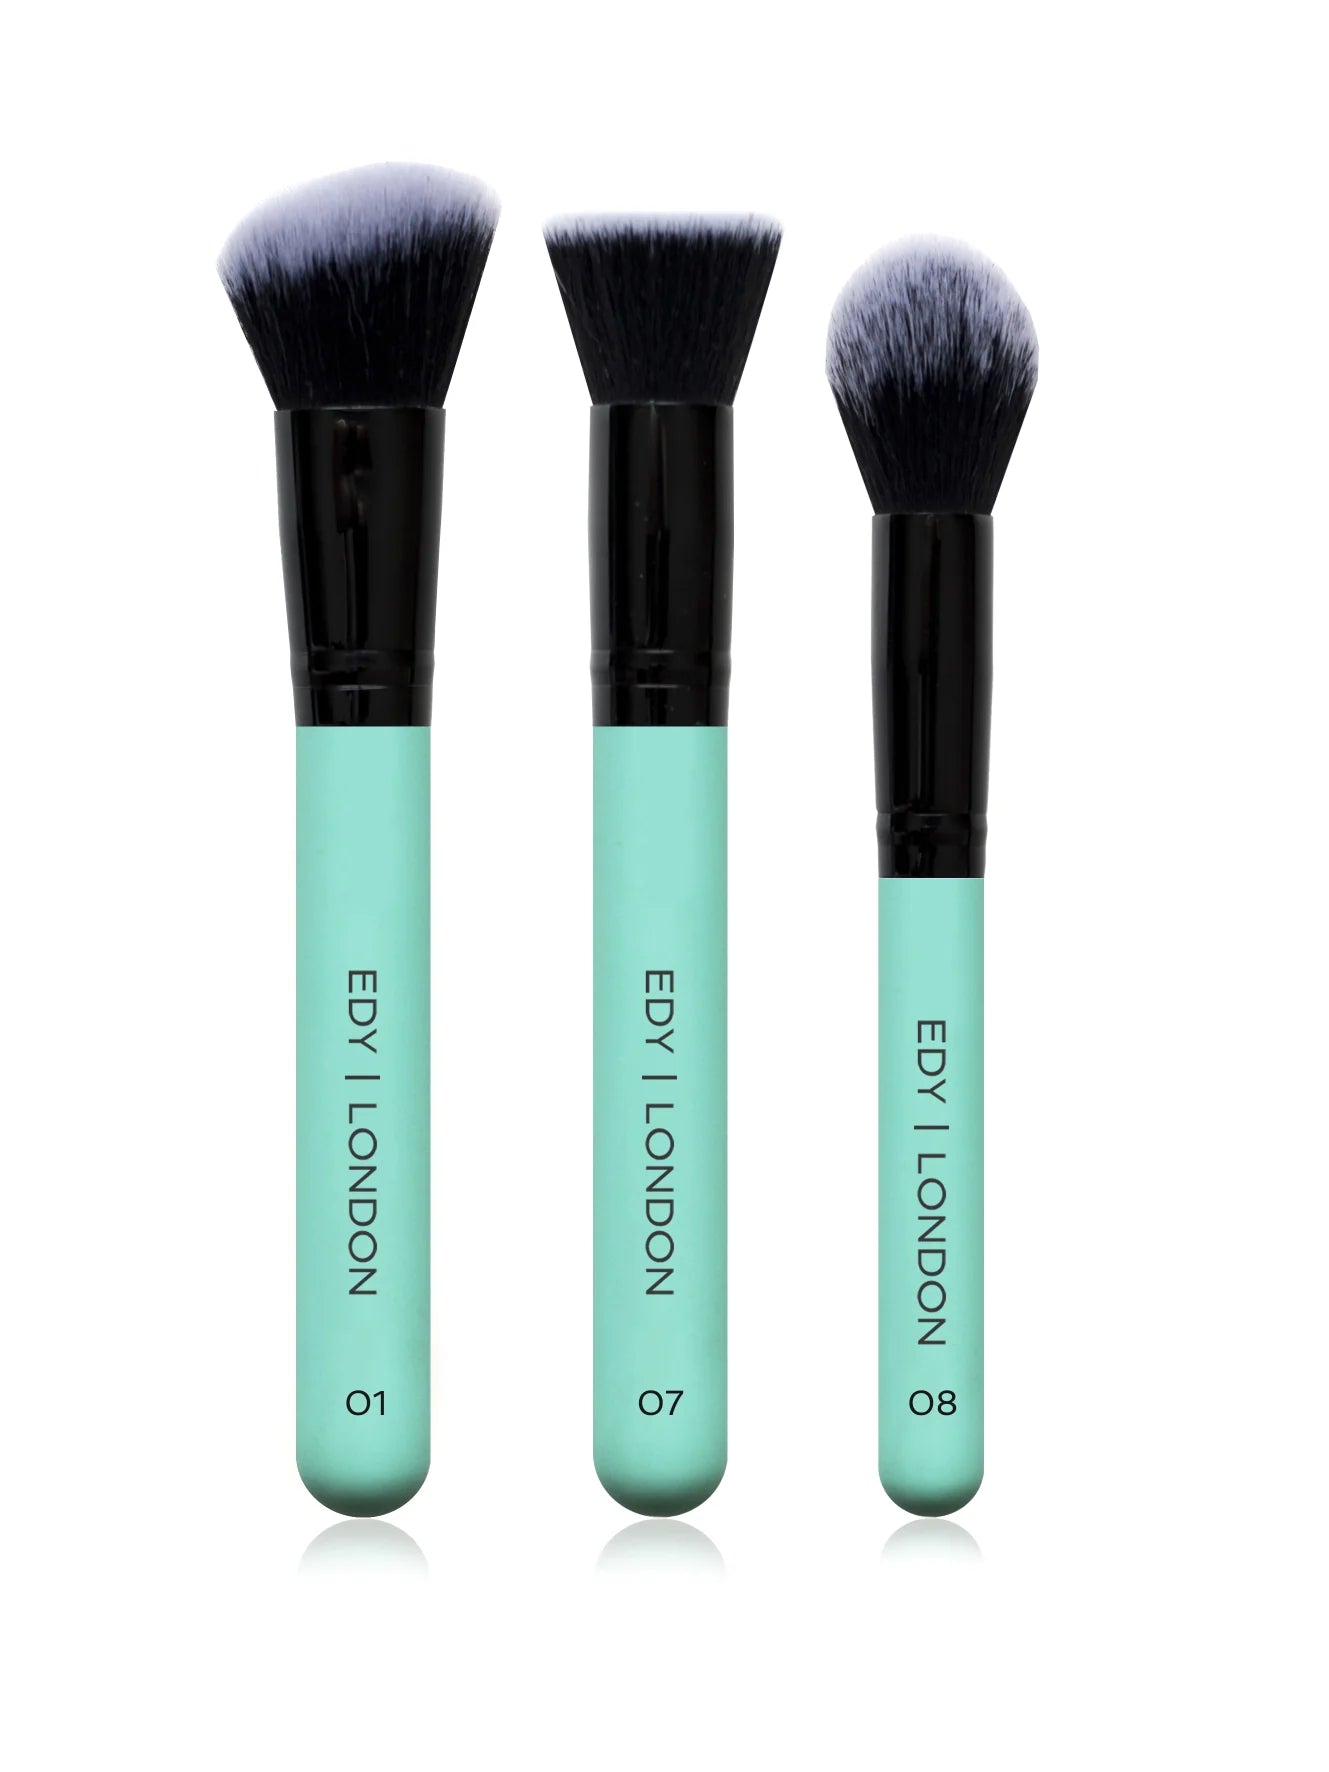 Dewy Skin Brush Set 508 Make-up Brush EDY LONDON Turquoise   - EDY LONDON PRODUCTS UK - The Best Makeup Brushes - shop.edy.london